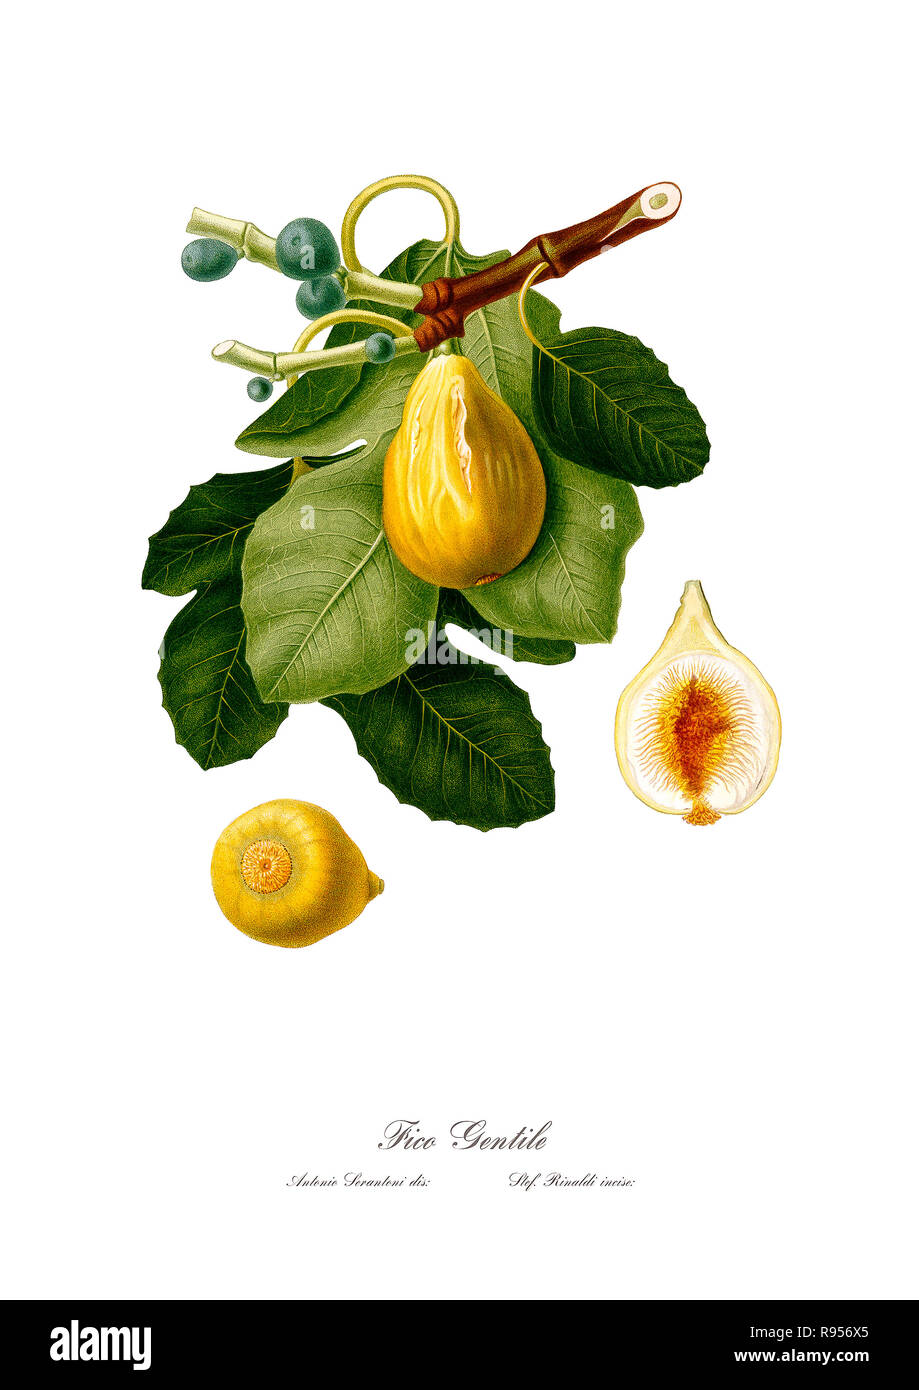 Vintage unica illustrazione botanica di figg. Foto Stock